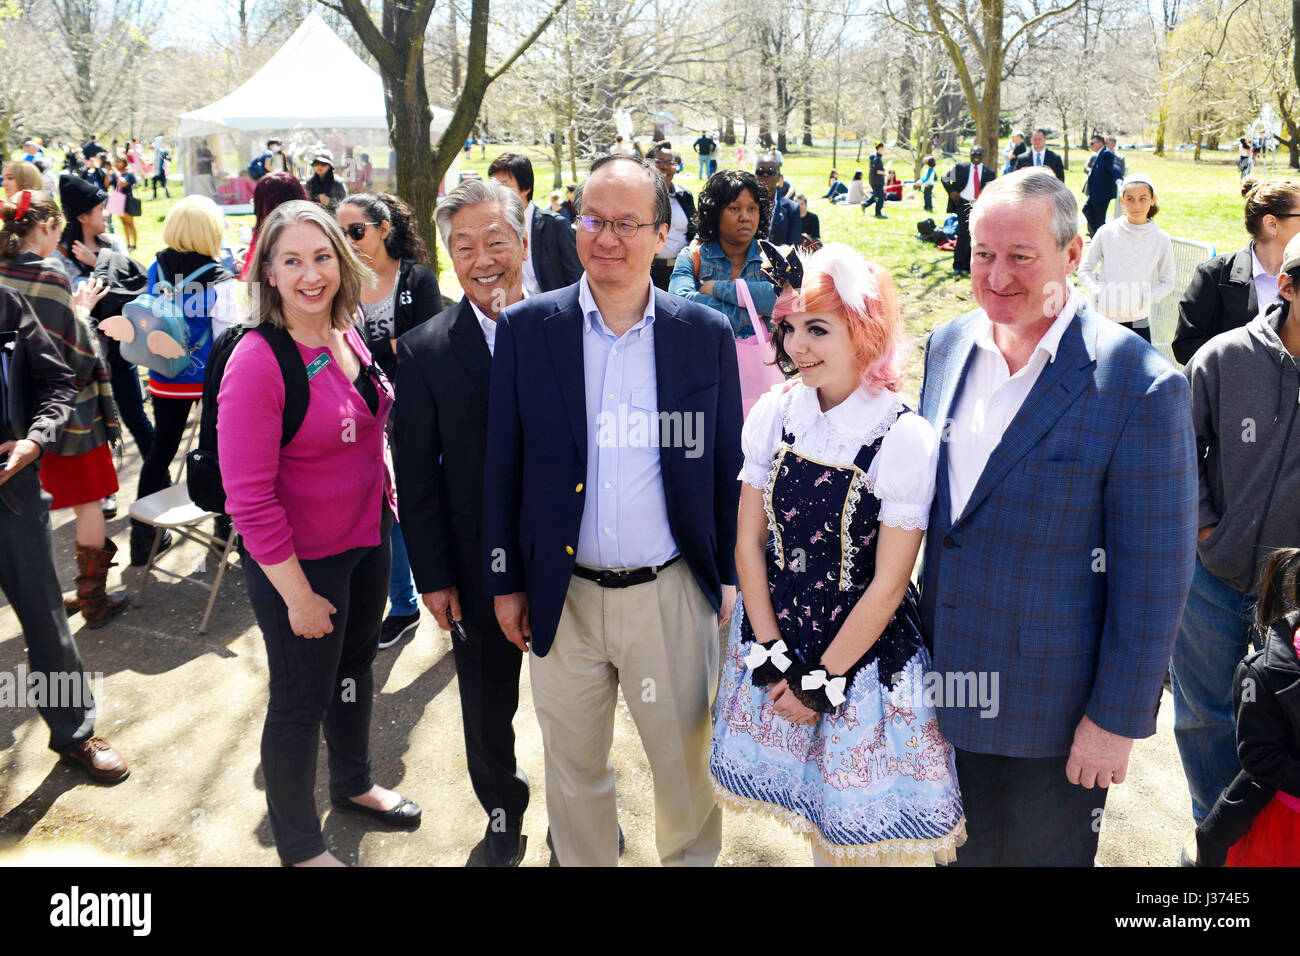 Le maire de Philadelphie Jim Kenney et une délégation de dignitaires japonais notamment Consul général du Japon à New York posent pour des photos au cours d'une visite de Banque D'Images